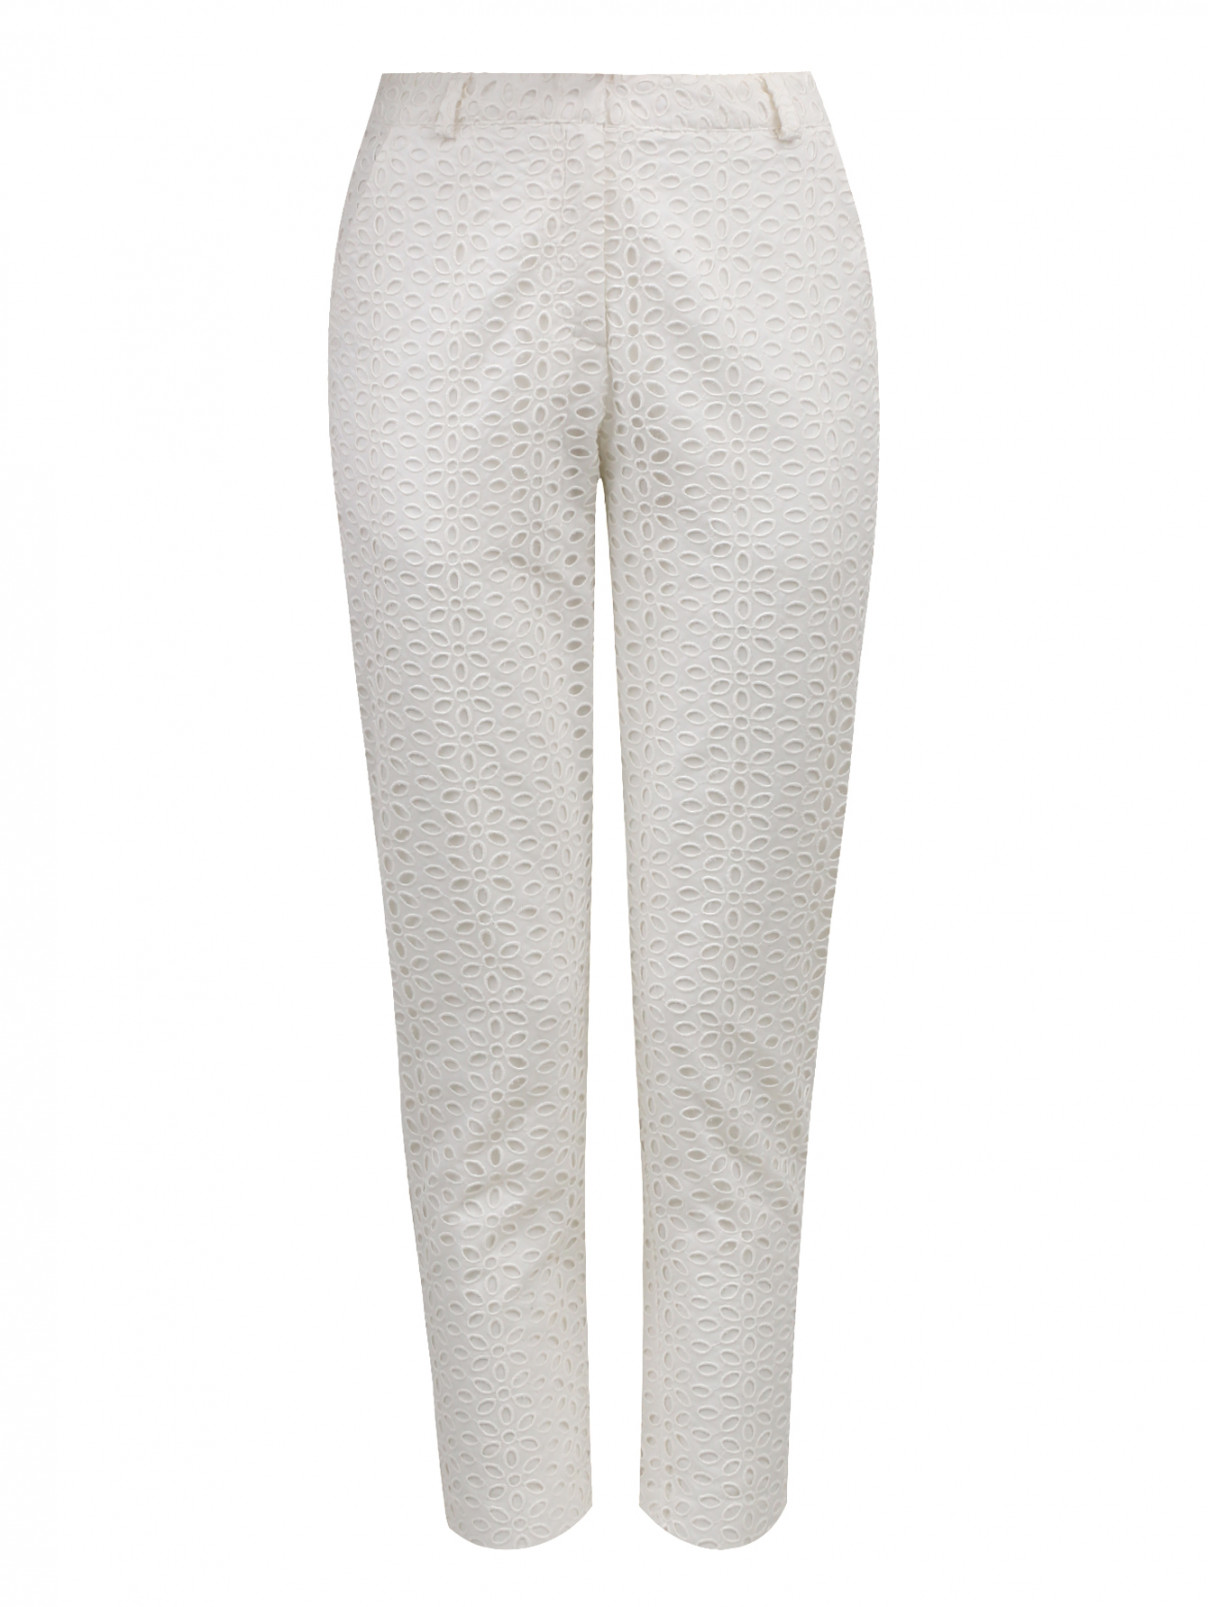 Укороченные брюки с высокой талией из хлопка с кружевной отделкой Aimo Richly  –  Общий вид  – Цвет:  Белый